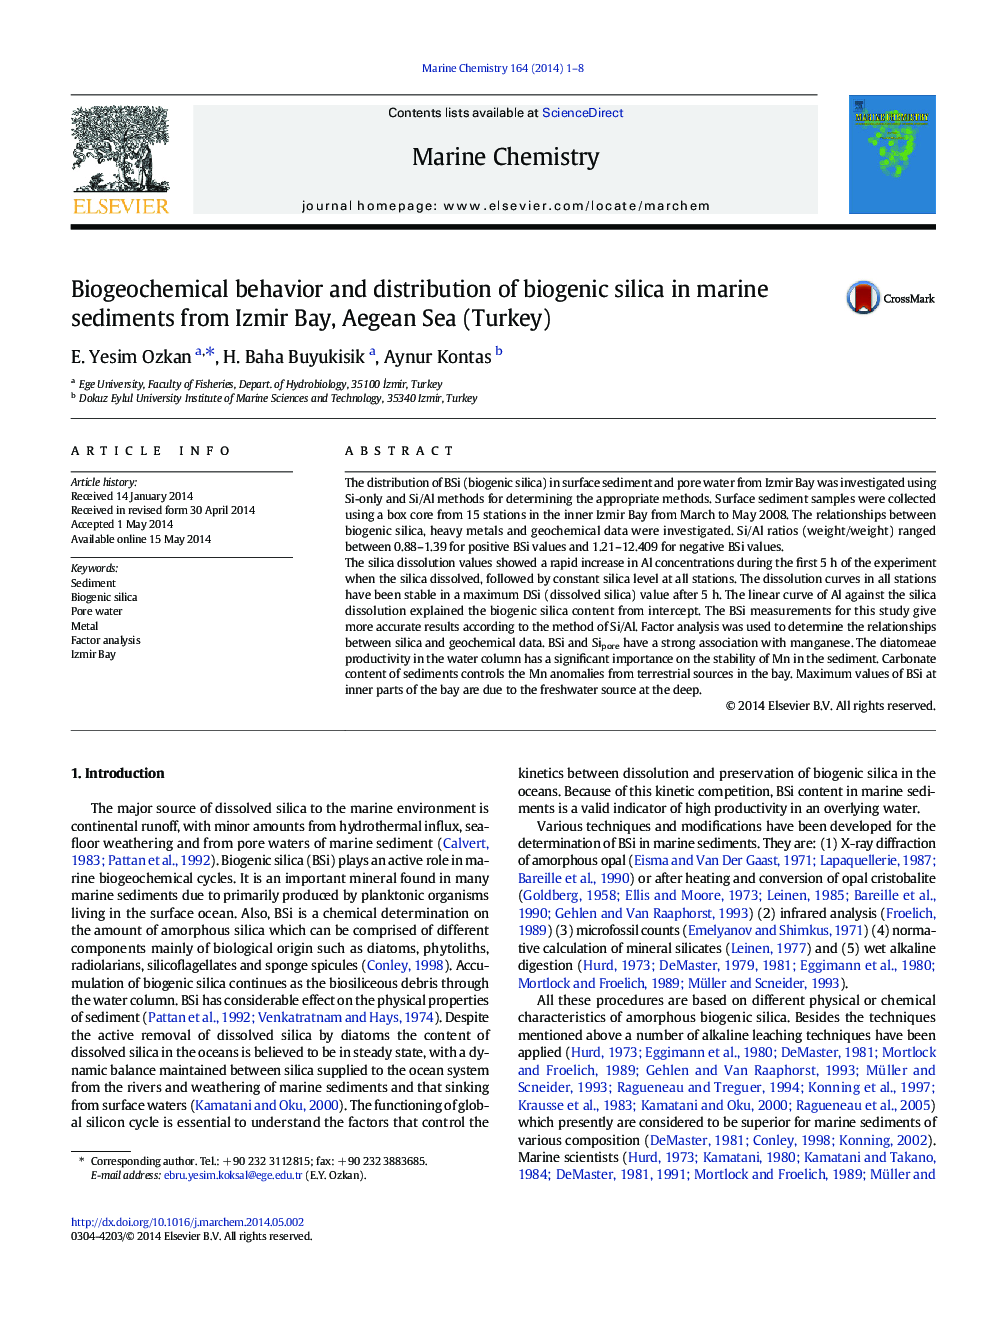 رفتار بیولوژیکی شیمیایی و توزیع سیلیس بیوژنیک در رسوبات دریایی از خلیج ازمیر، دریای اژه (ترکیه) 